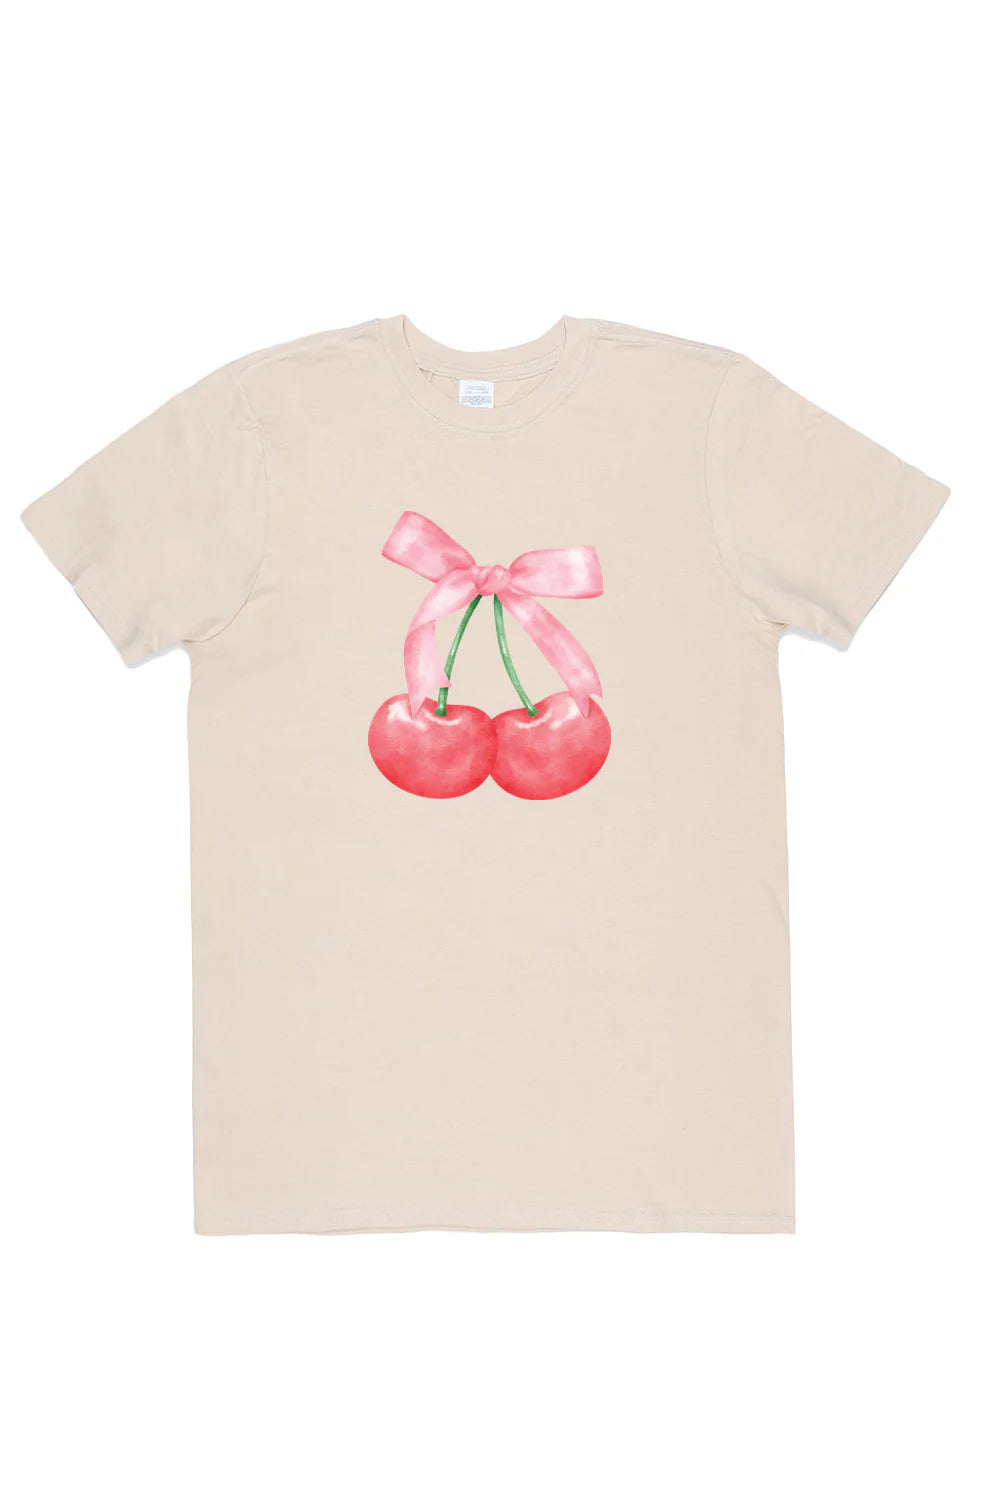 Twin Cherries Printed T-Shirt